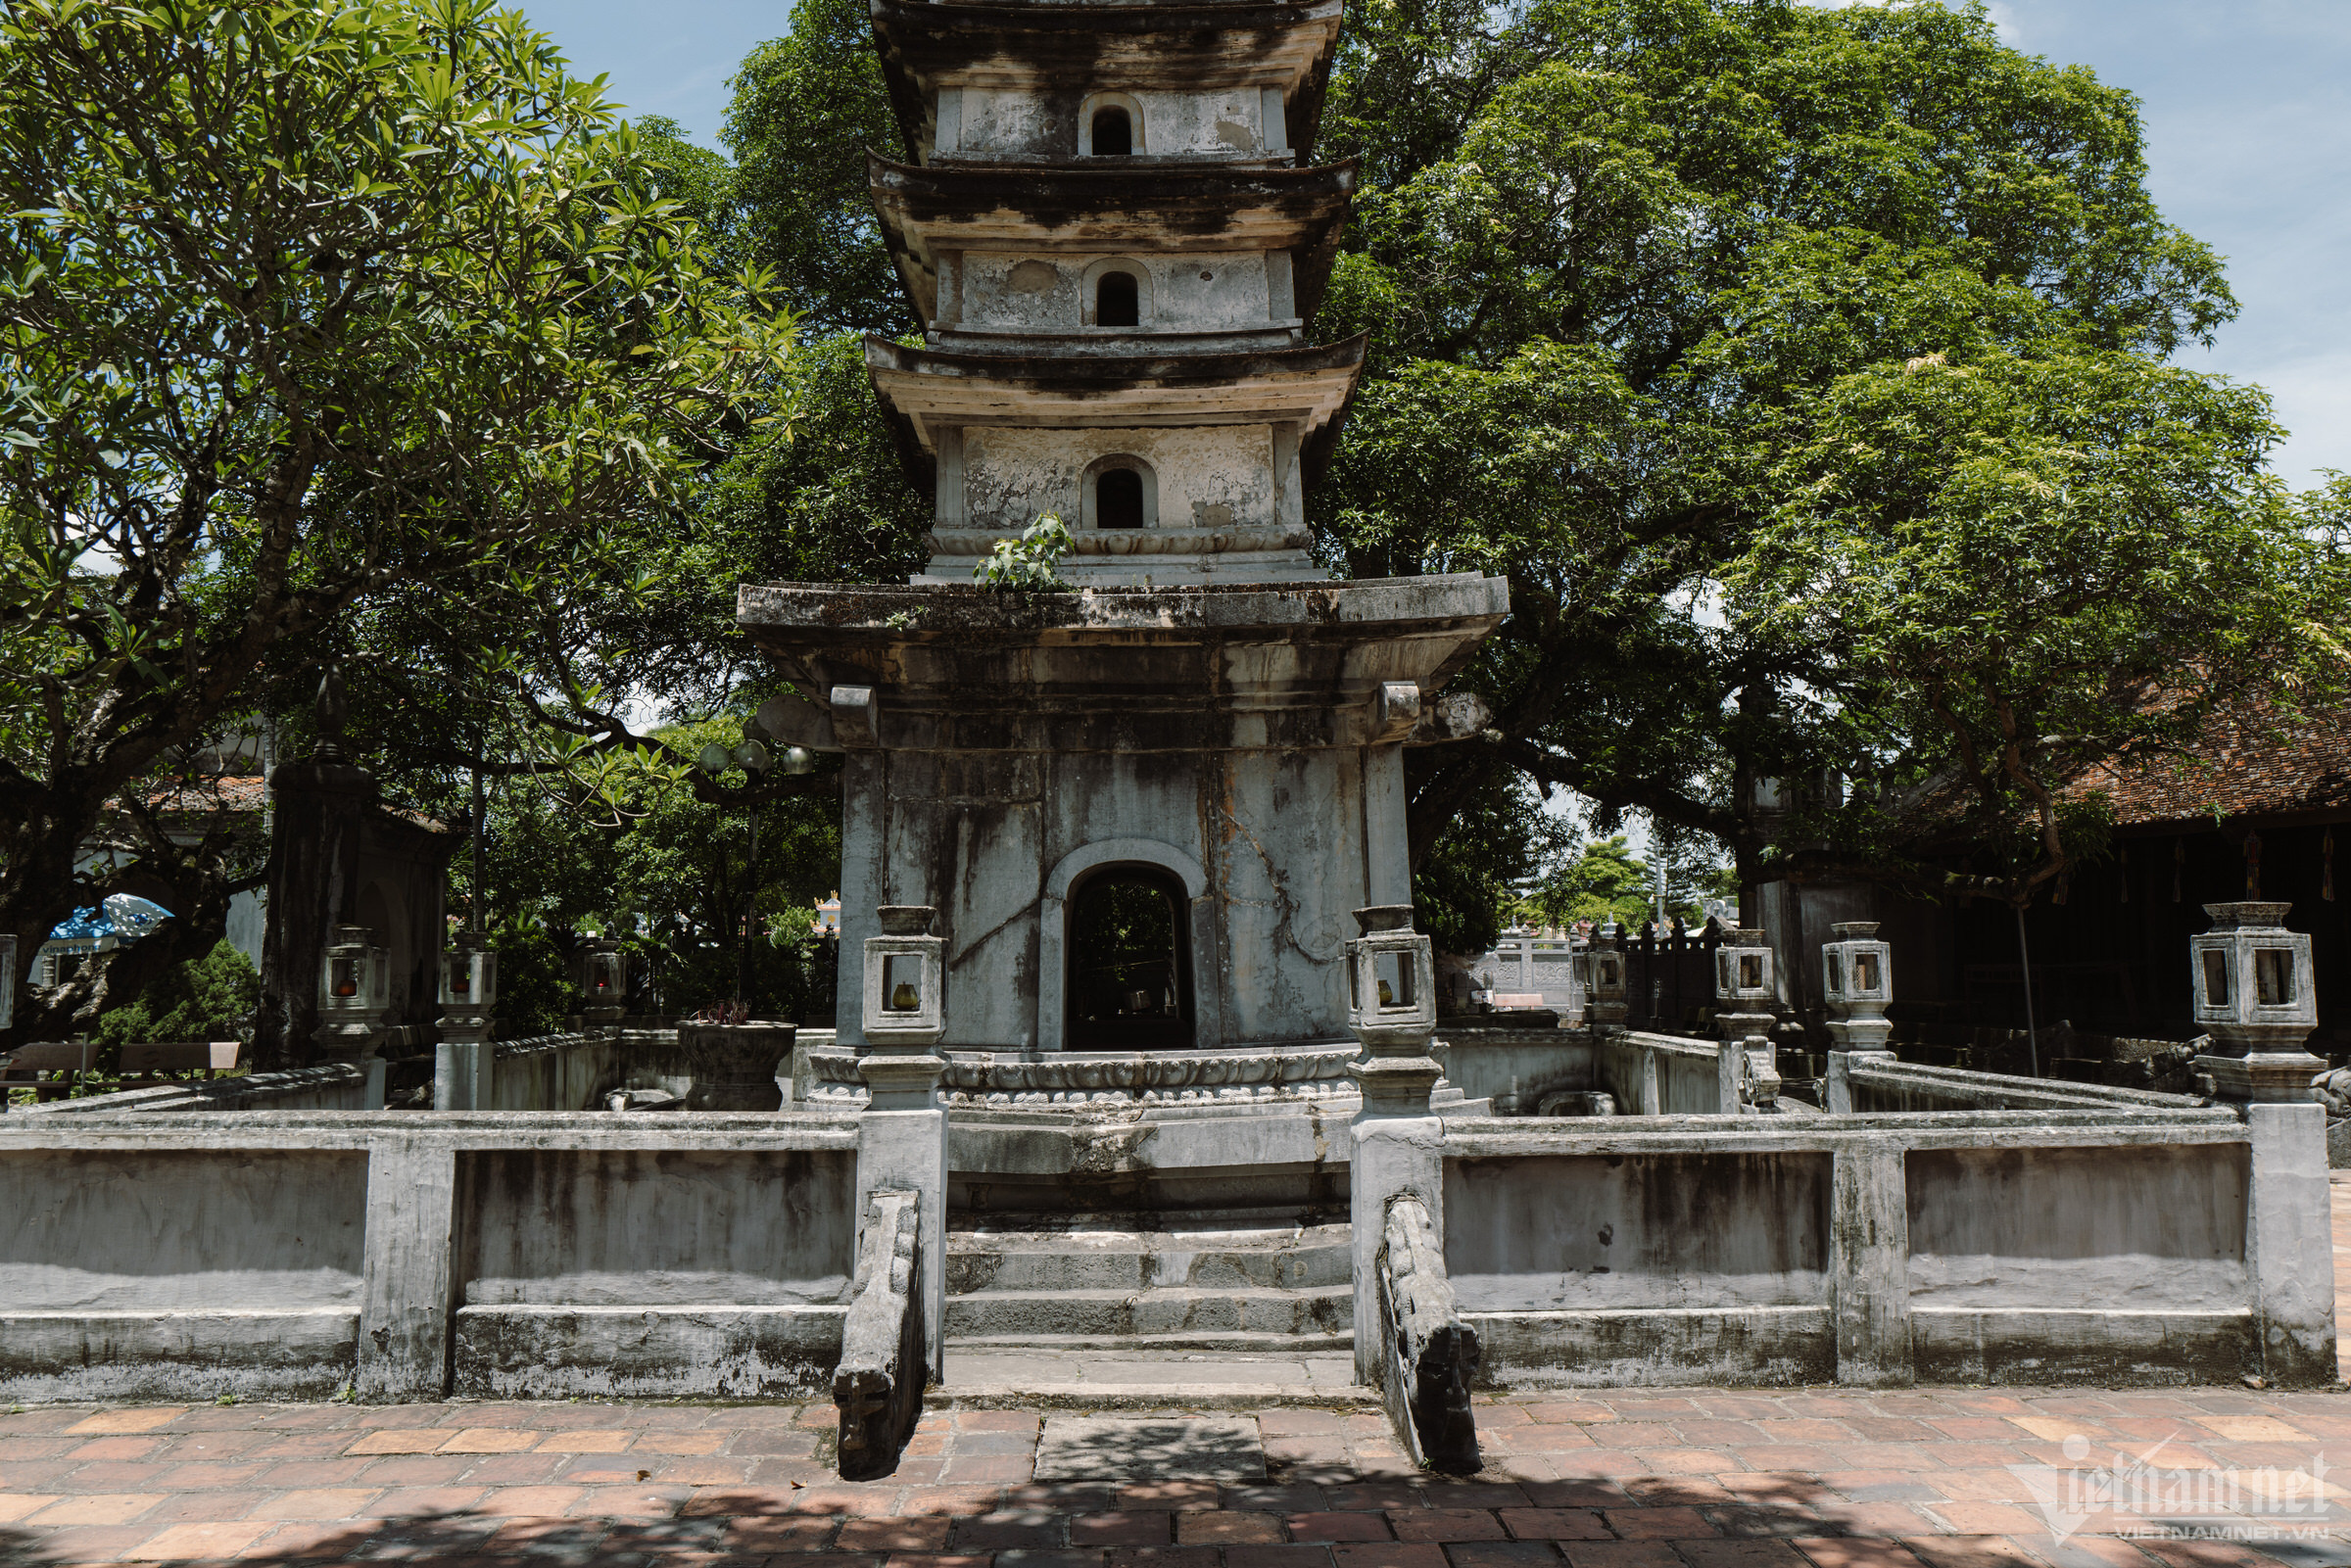 Ngôi chùa tháp 800 năm tuổi xanh mát tuyệt đẹp ngay gần Hà Nội